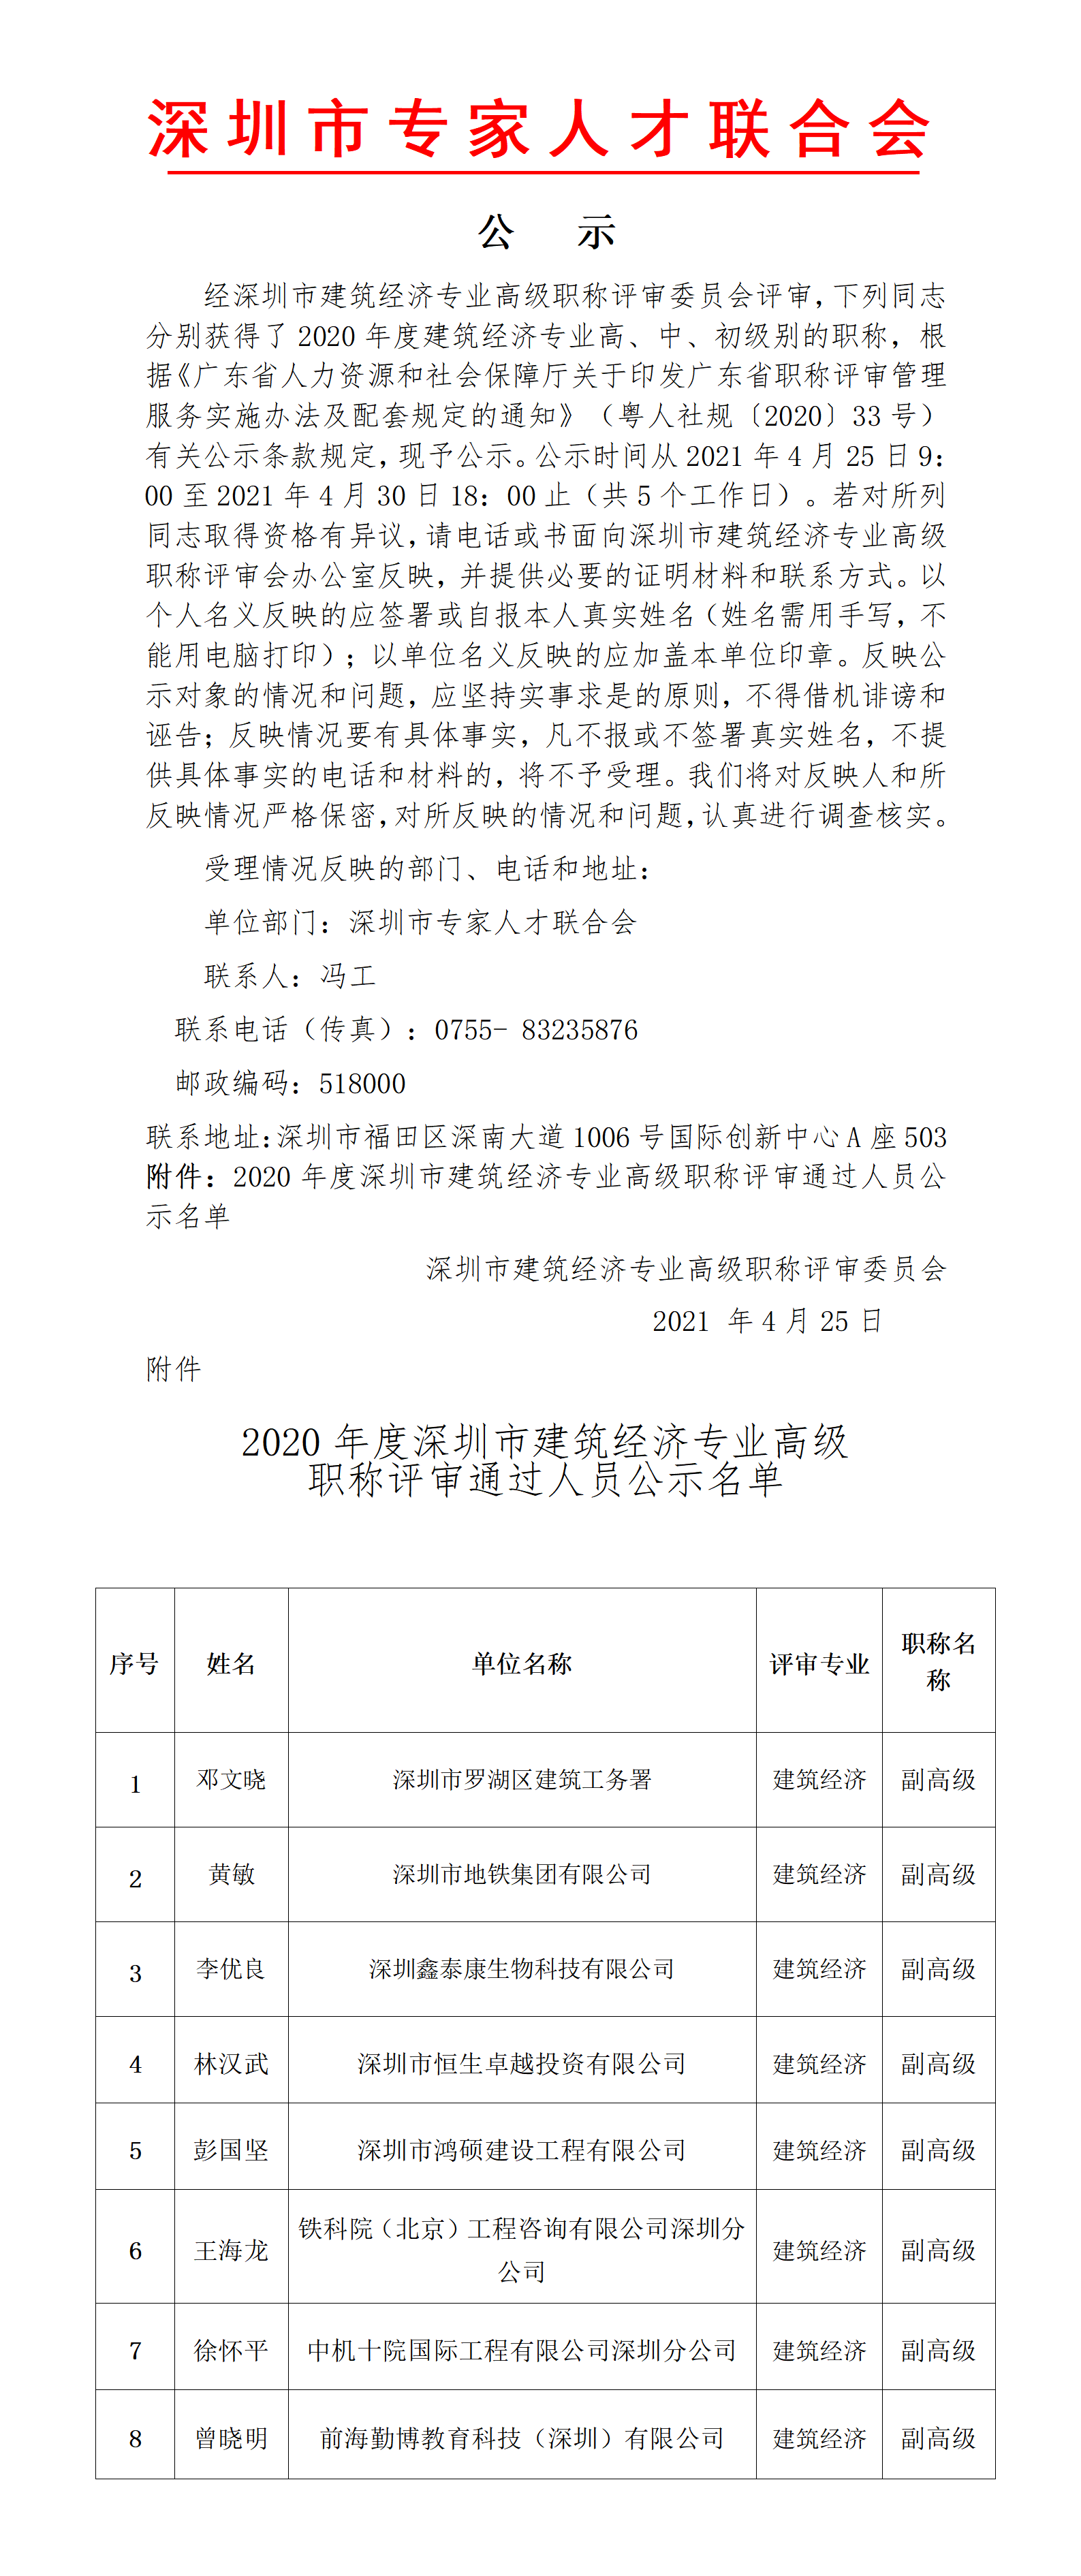 2020年度深圳市建筑经济专业高级职称评审委员会通过人员公示